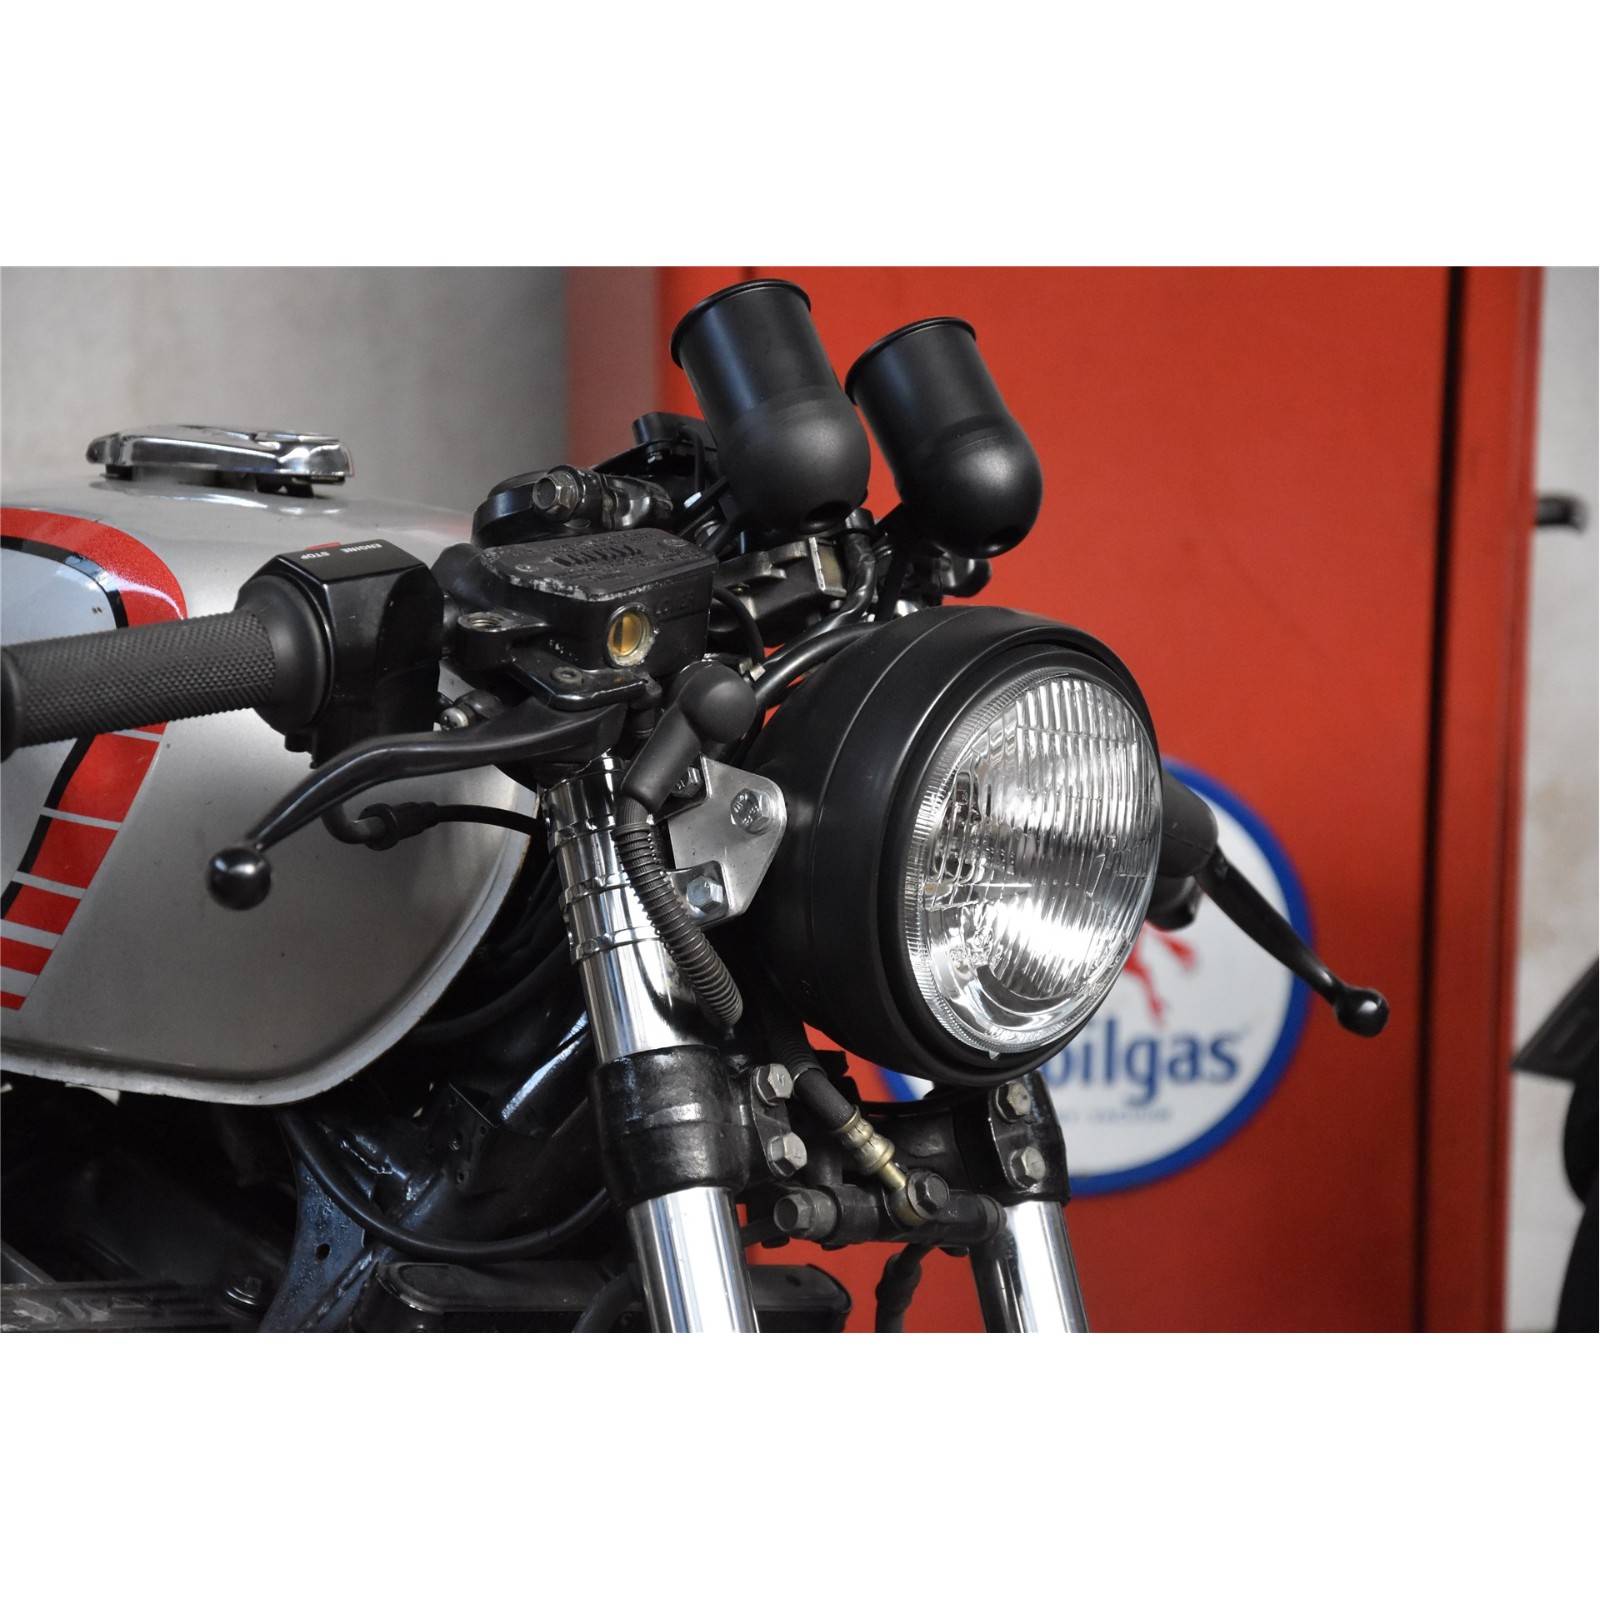 Scheinwerfereinheit & LED TNT Winterbee Carbon Look Universal Motorrad -  Scheinwerfermasken / Scheinwerfereinheiten -  -  Mofa, Roller, Ersatzteile und Zubehör